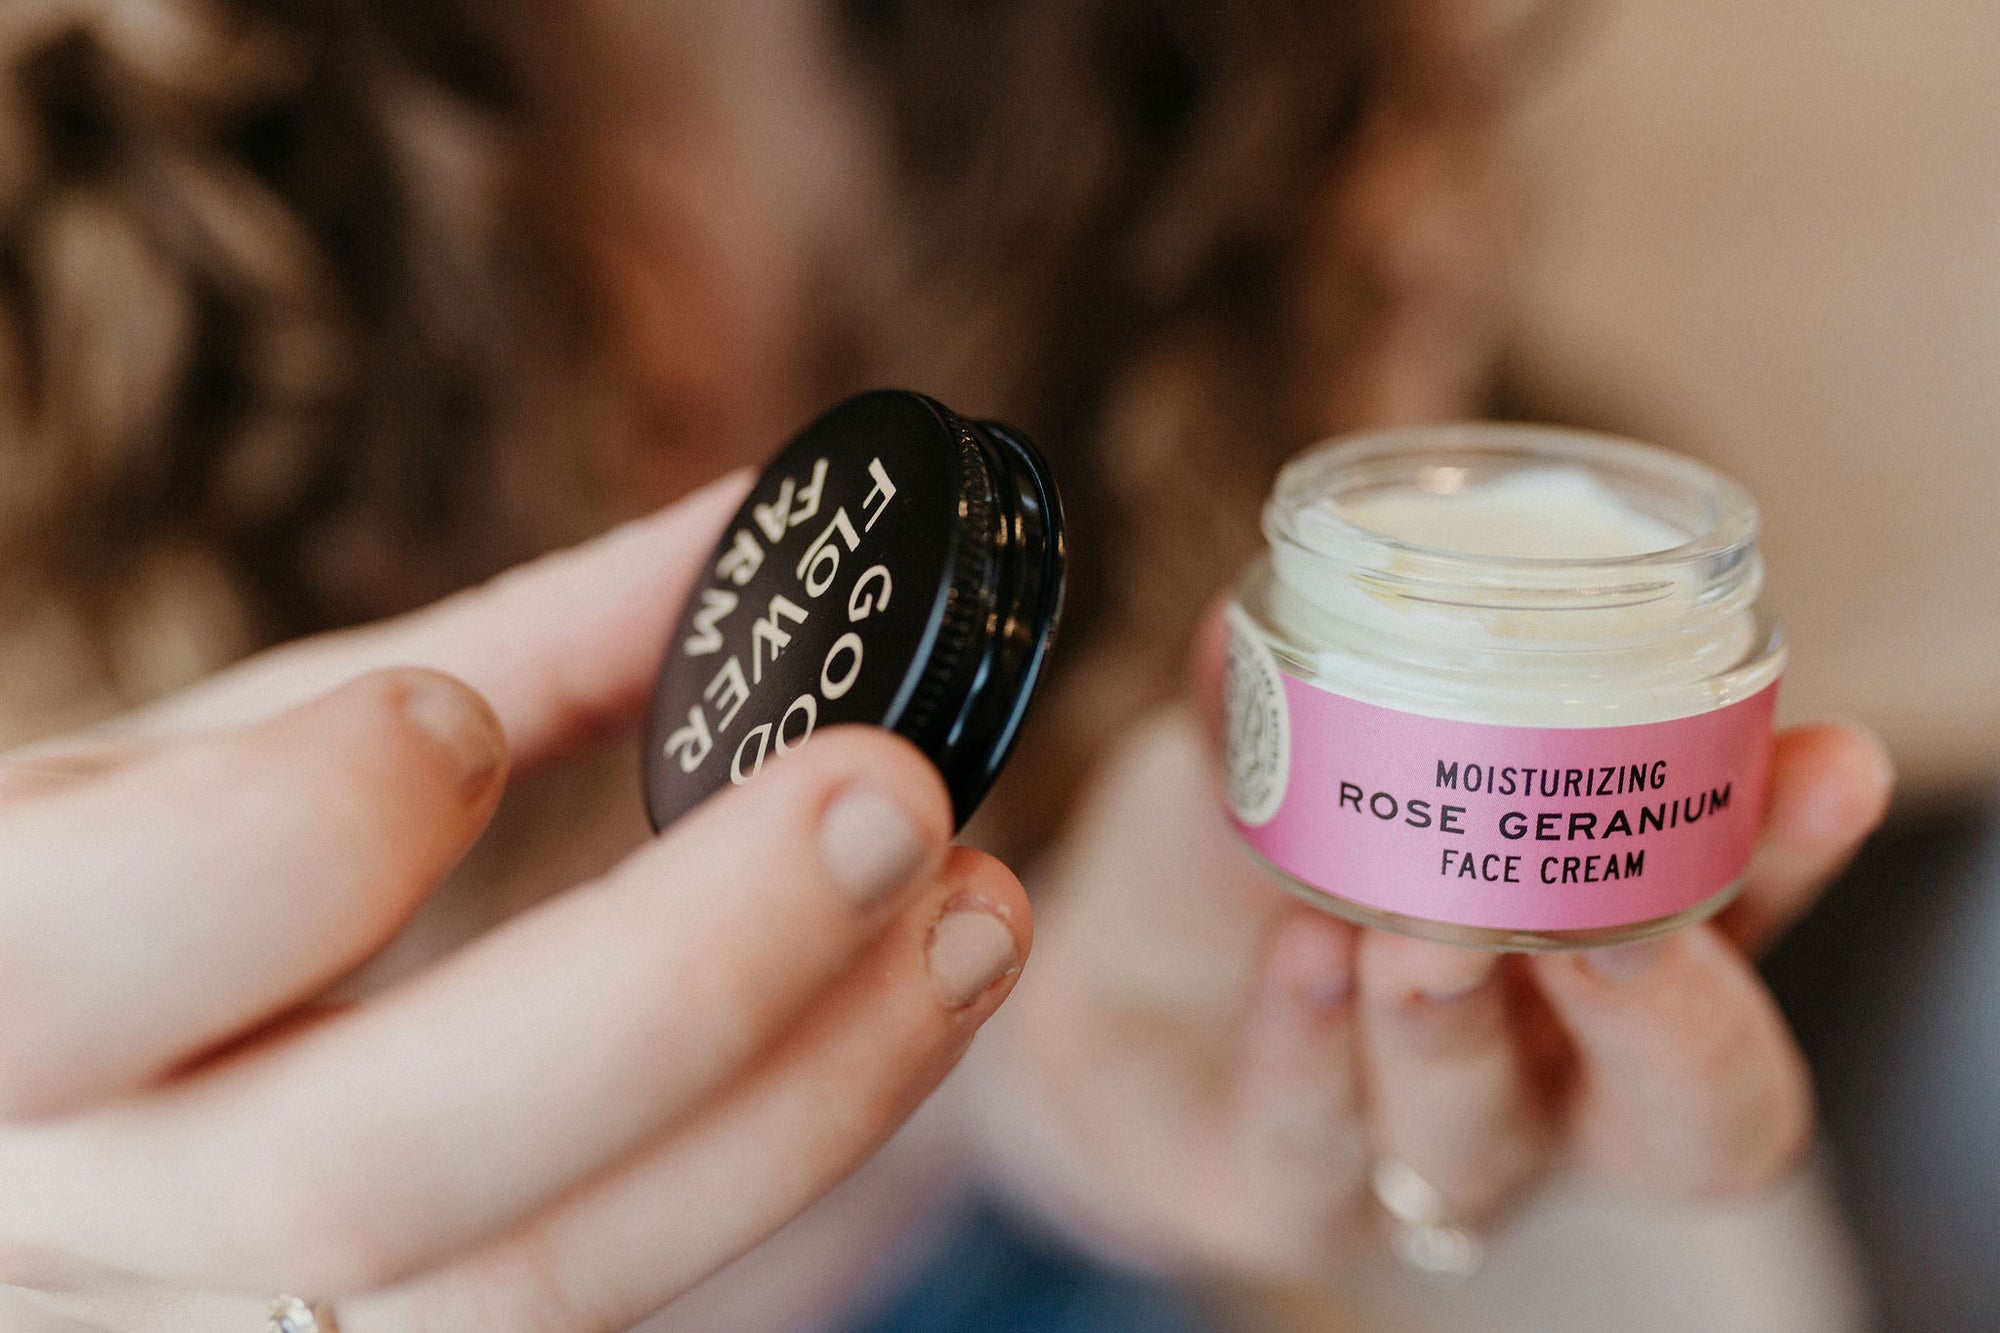 Rose Geranium Face Cream / 1 oz